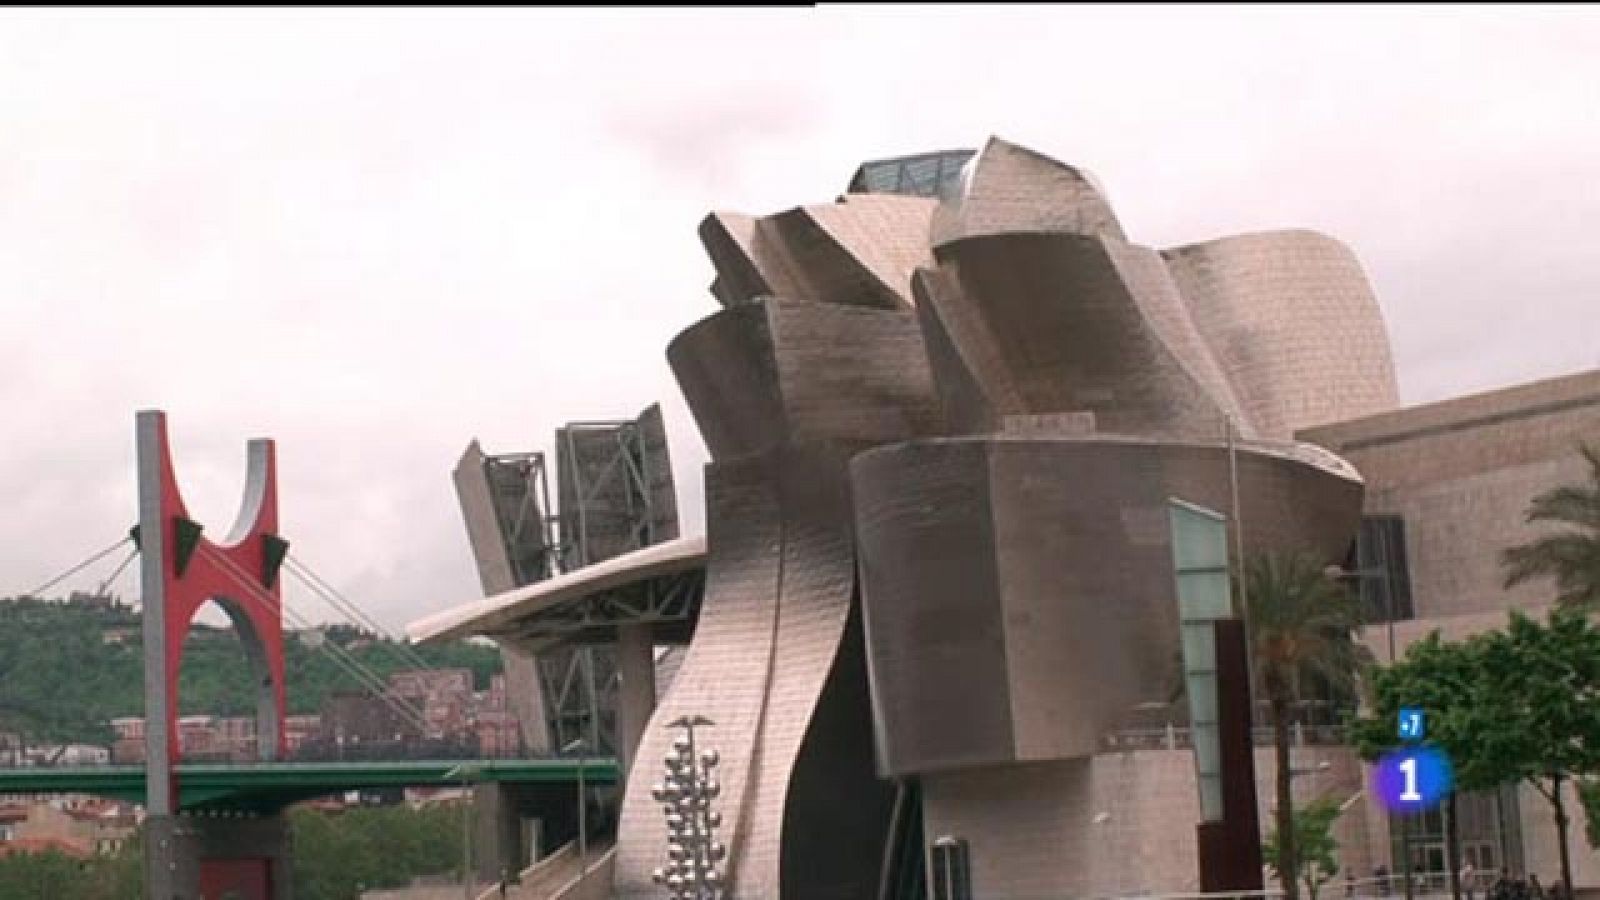 Comando actualidad - Mi tesoro - Guggenheim, el mejor reclamo turístico de Bilbao